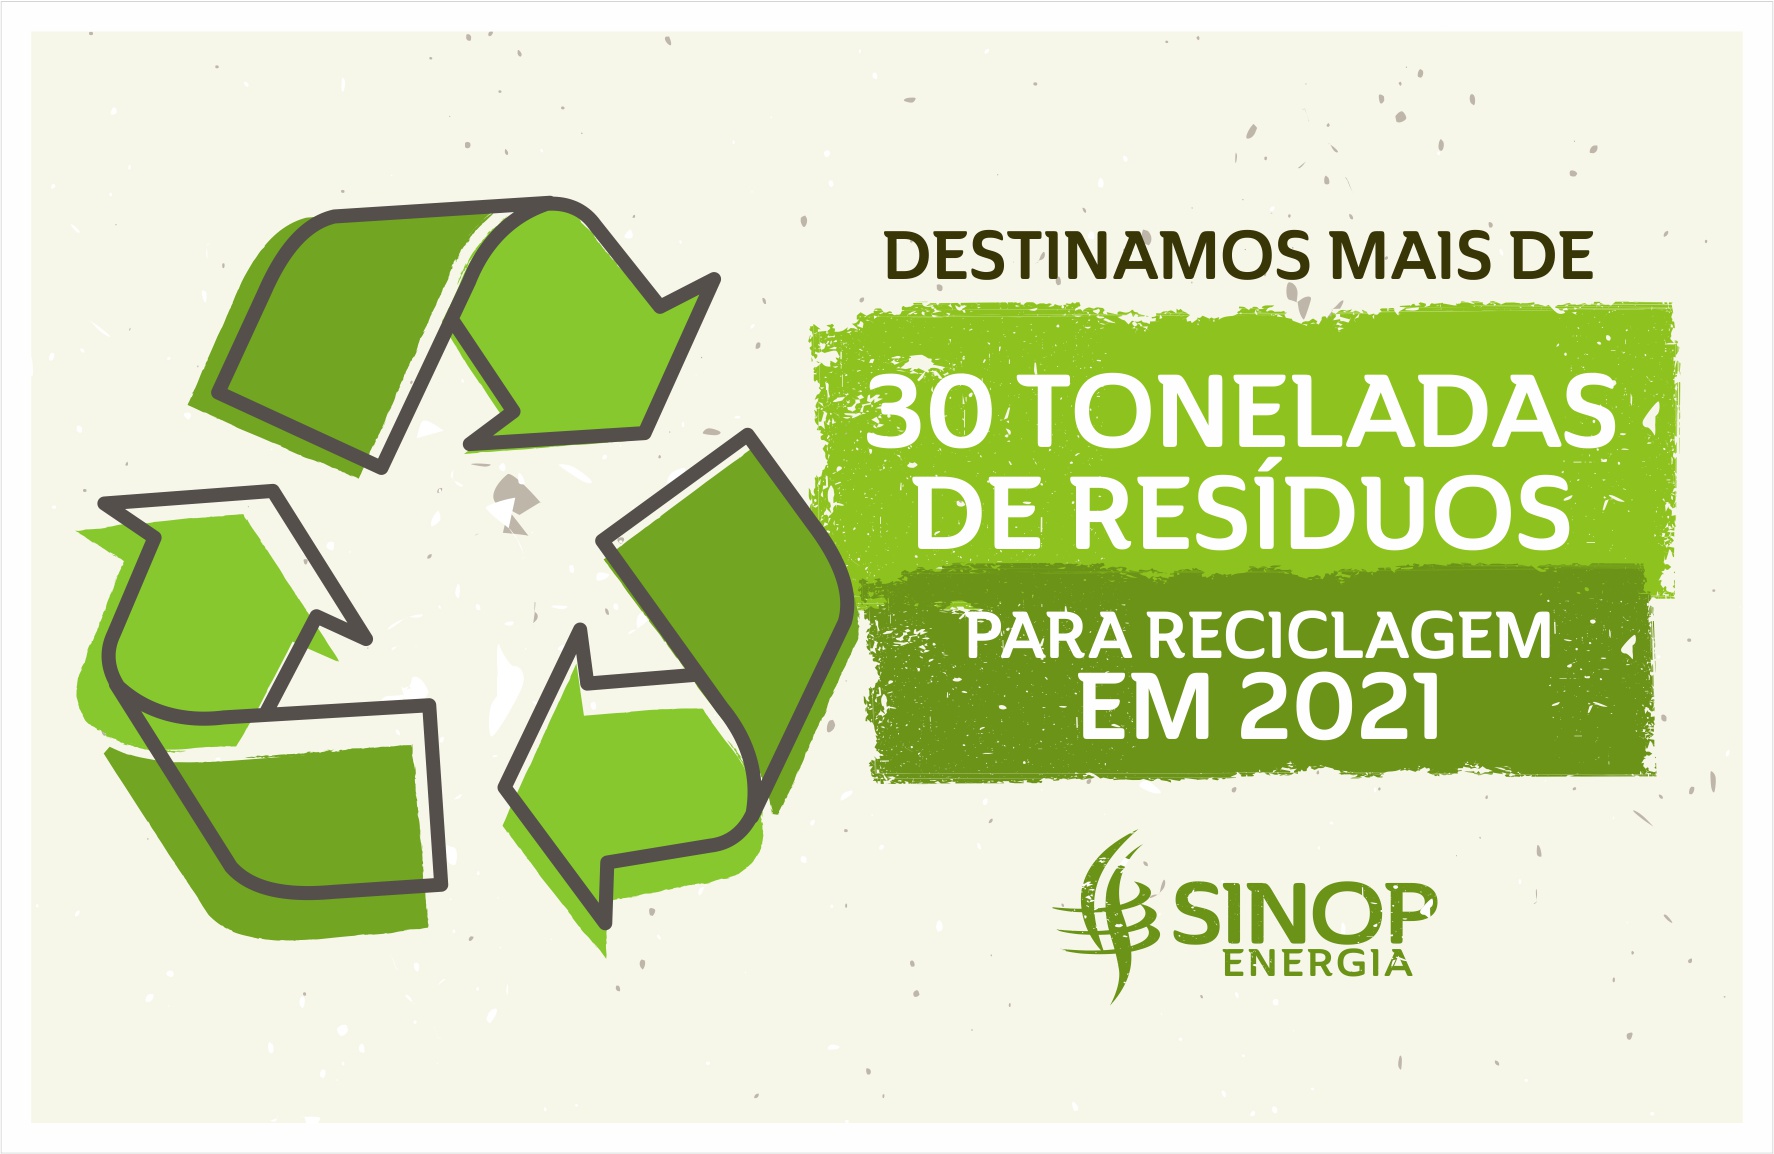 Destinamos mais de 30 toneladas de resíduos para reciclagem em 2021